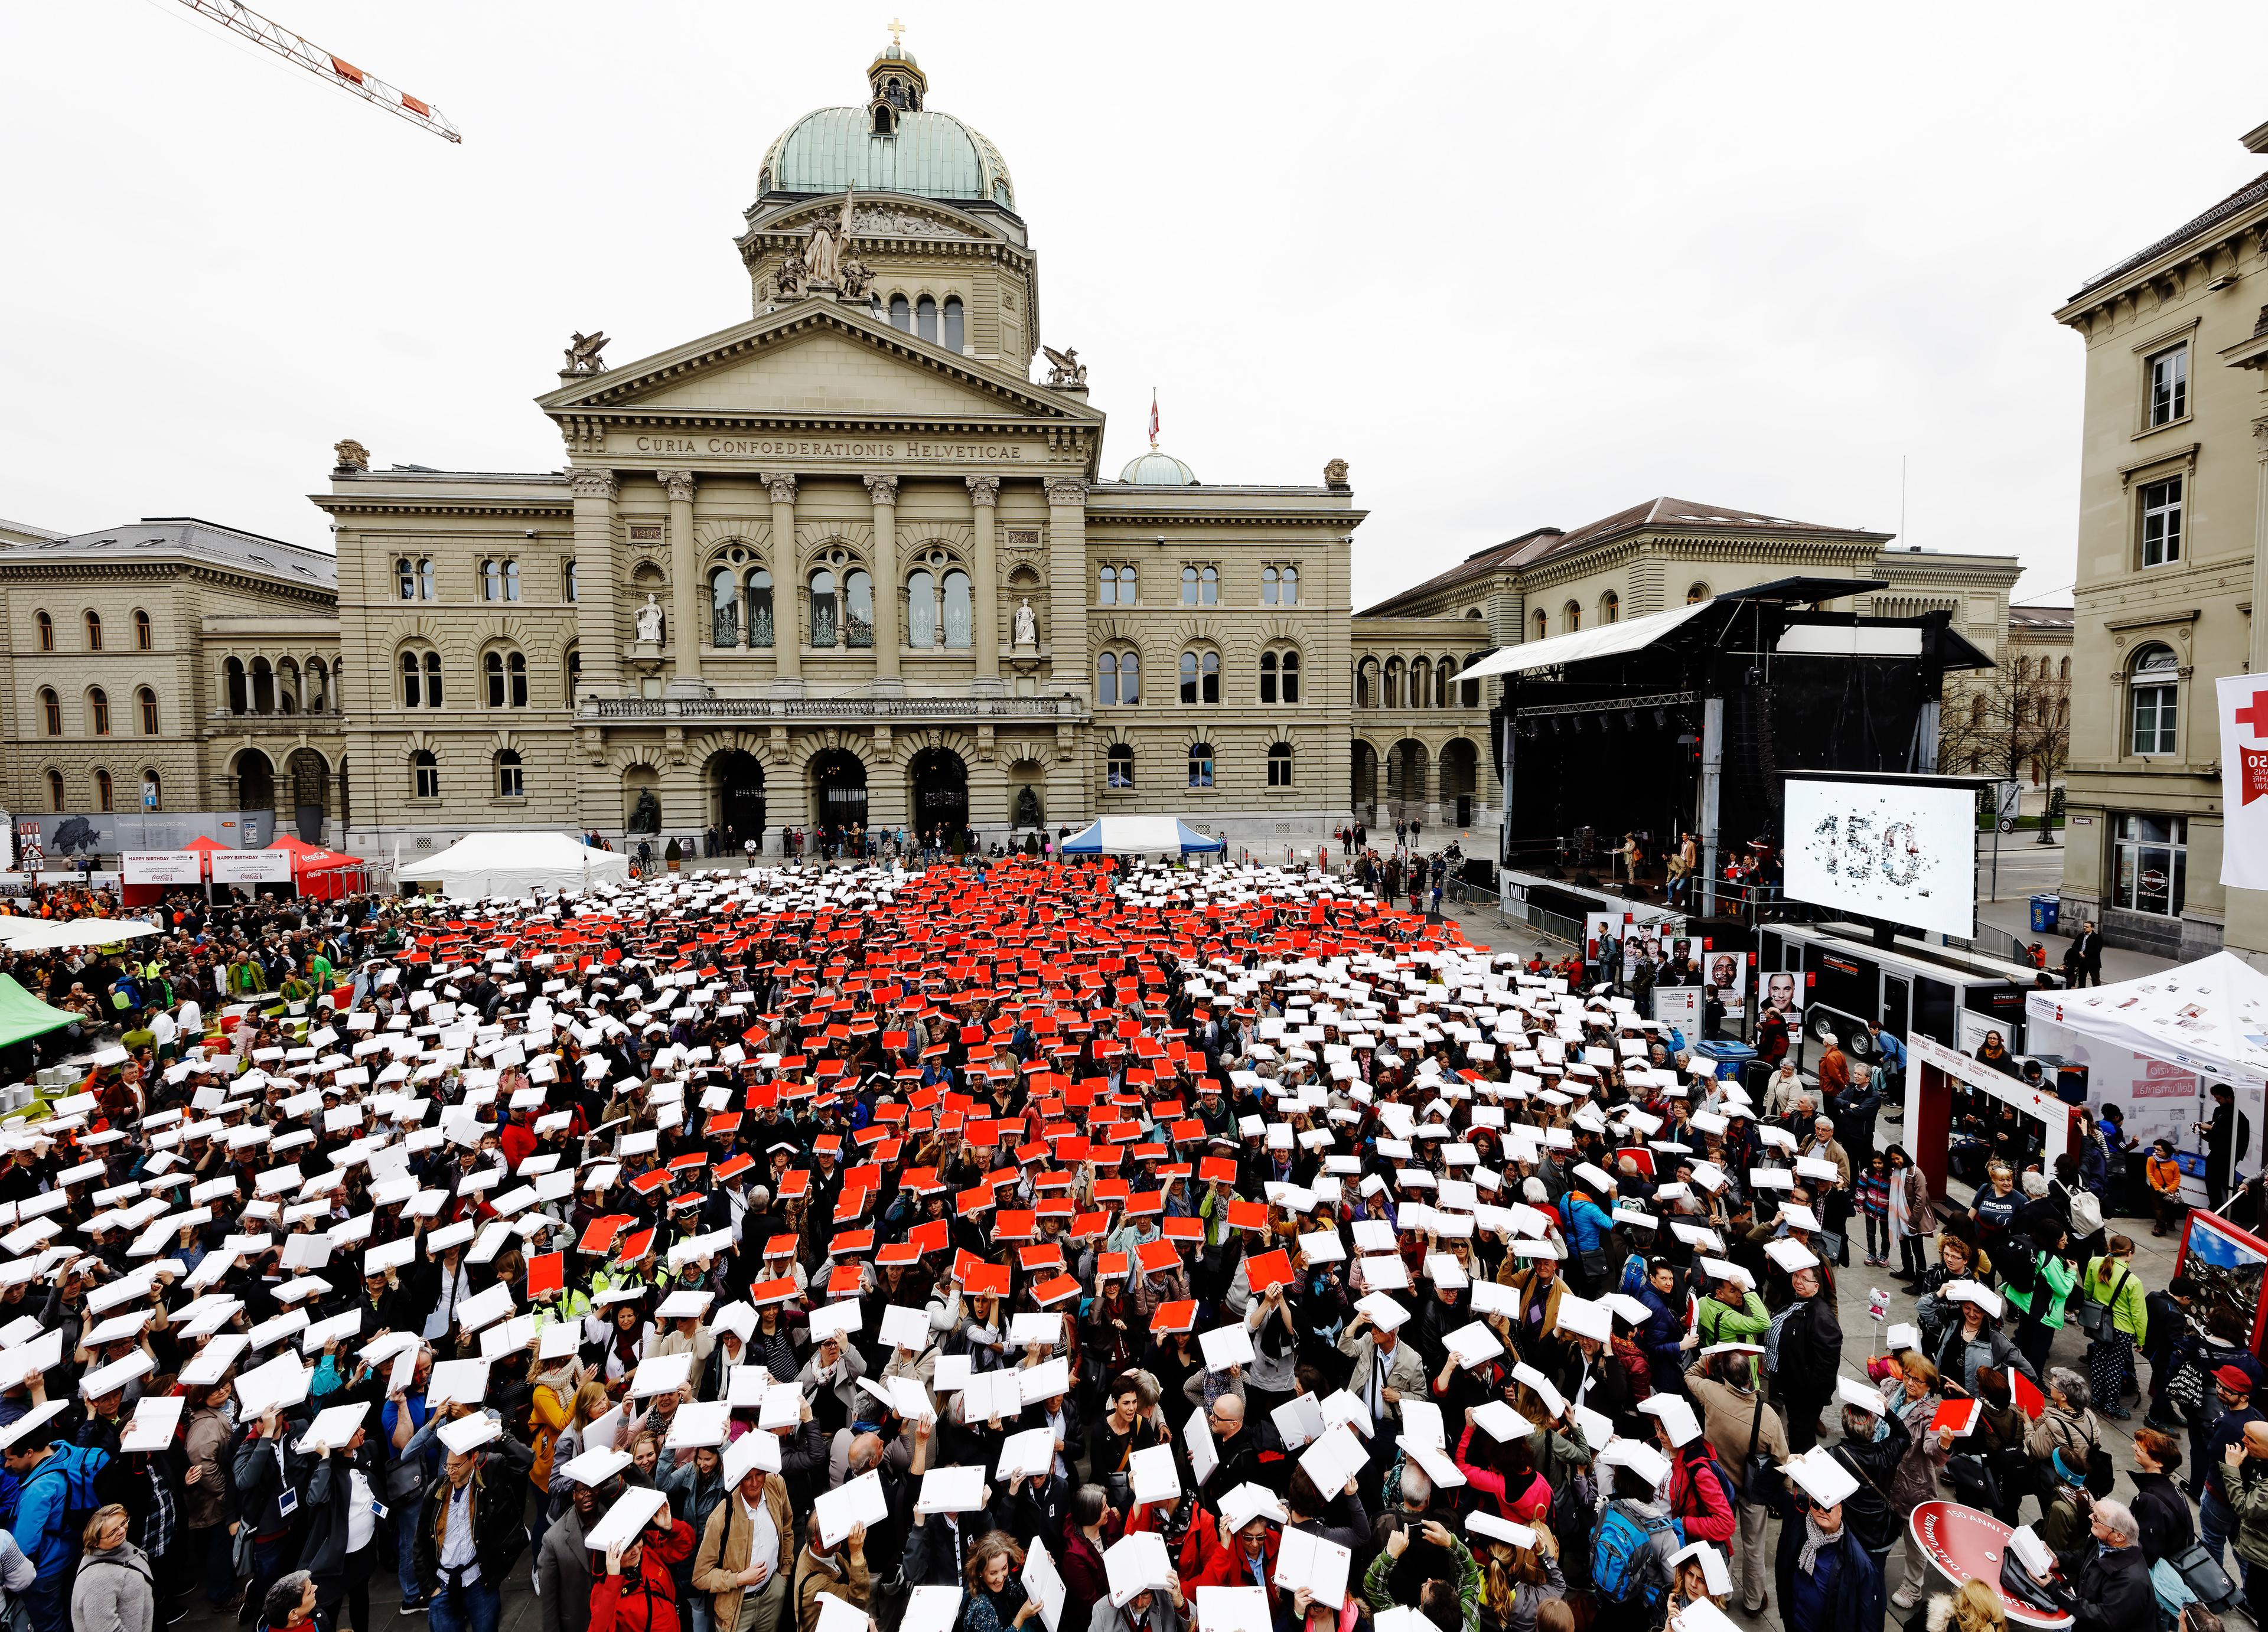 Quelques milliers de personnes forment une grande croix rouge sur fond blanc avec des feuilles rouges et blanches sur la place fédérale de Berne.